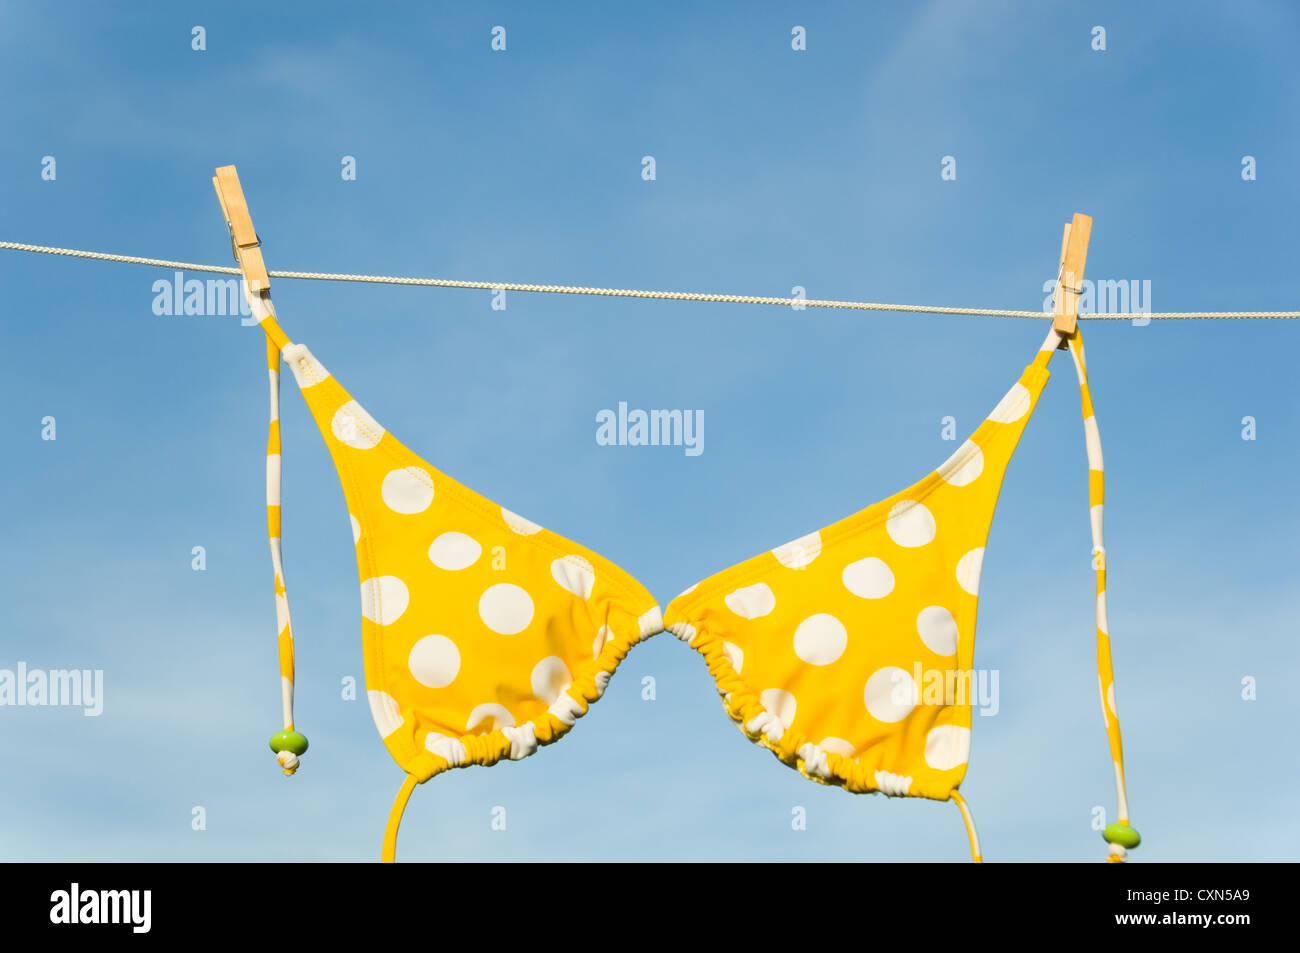 Una de Itsy Bitsy teeny weeny yellow polka dot bikini colgando de un tendedero con espacio de copia Foto de stock